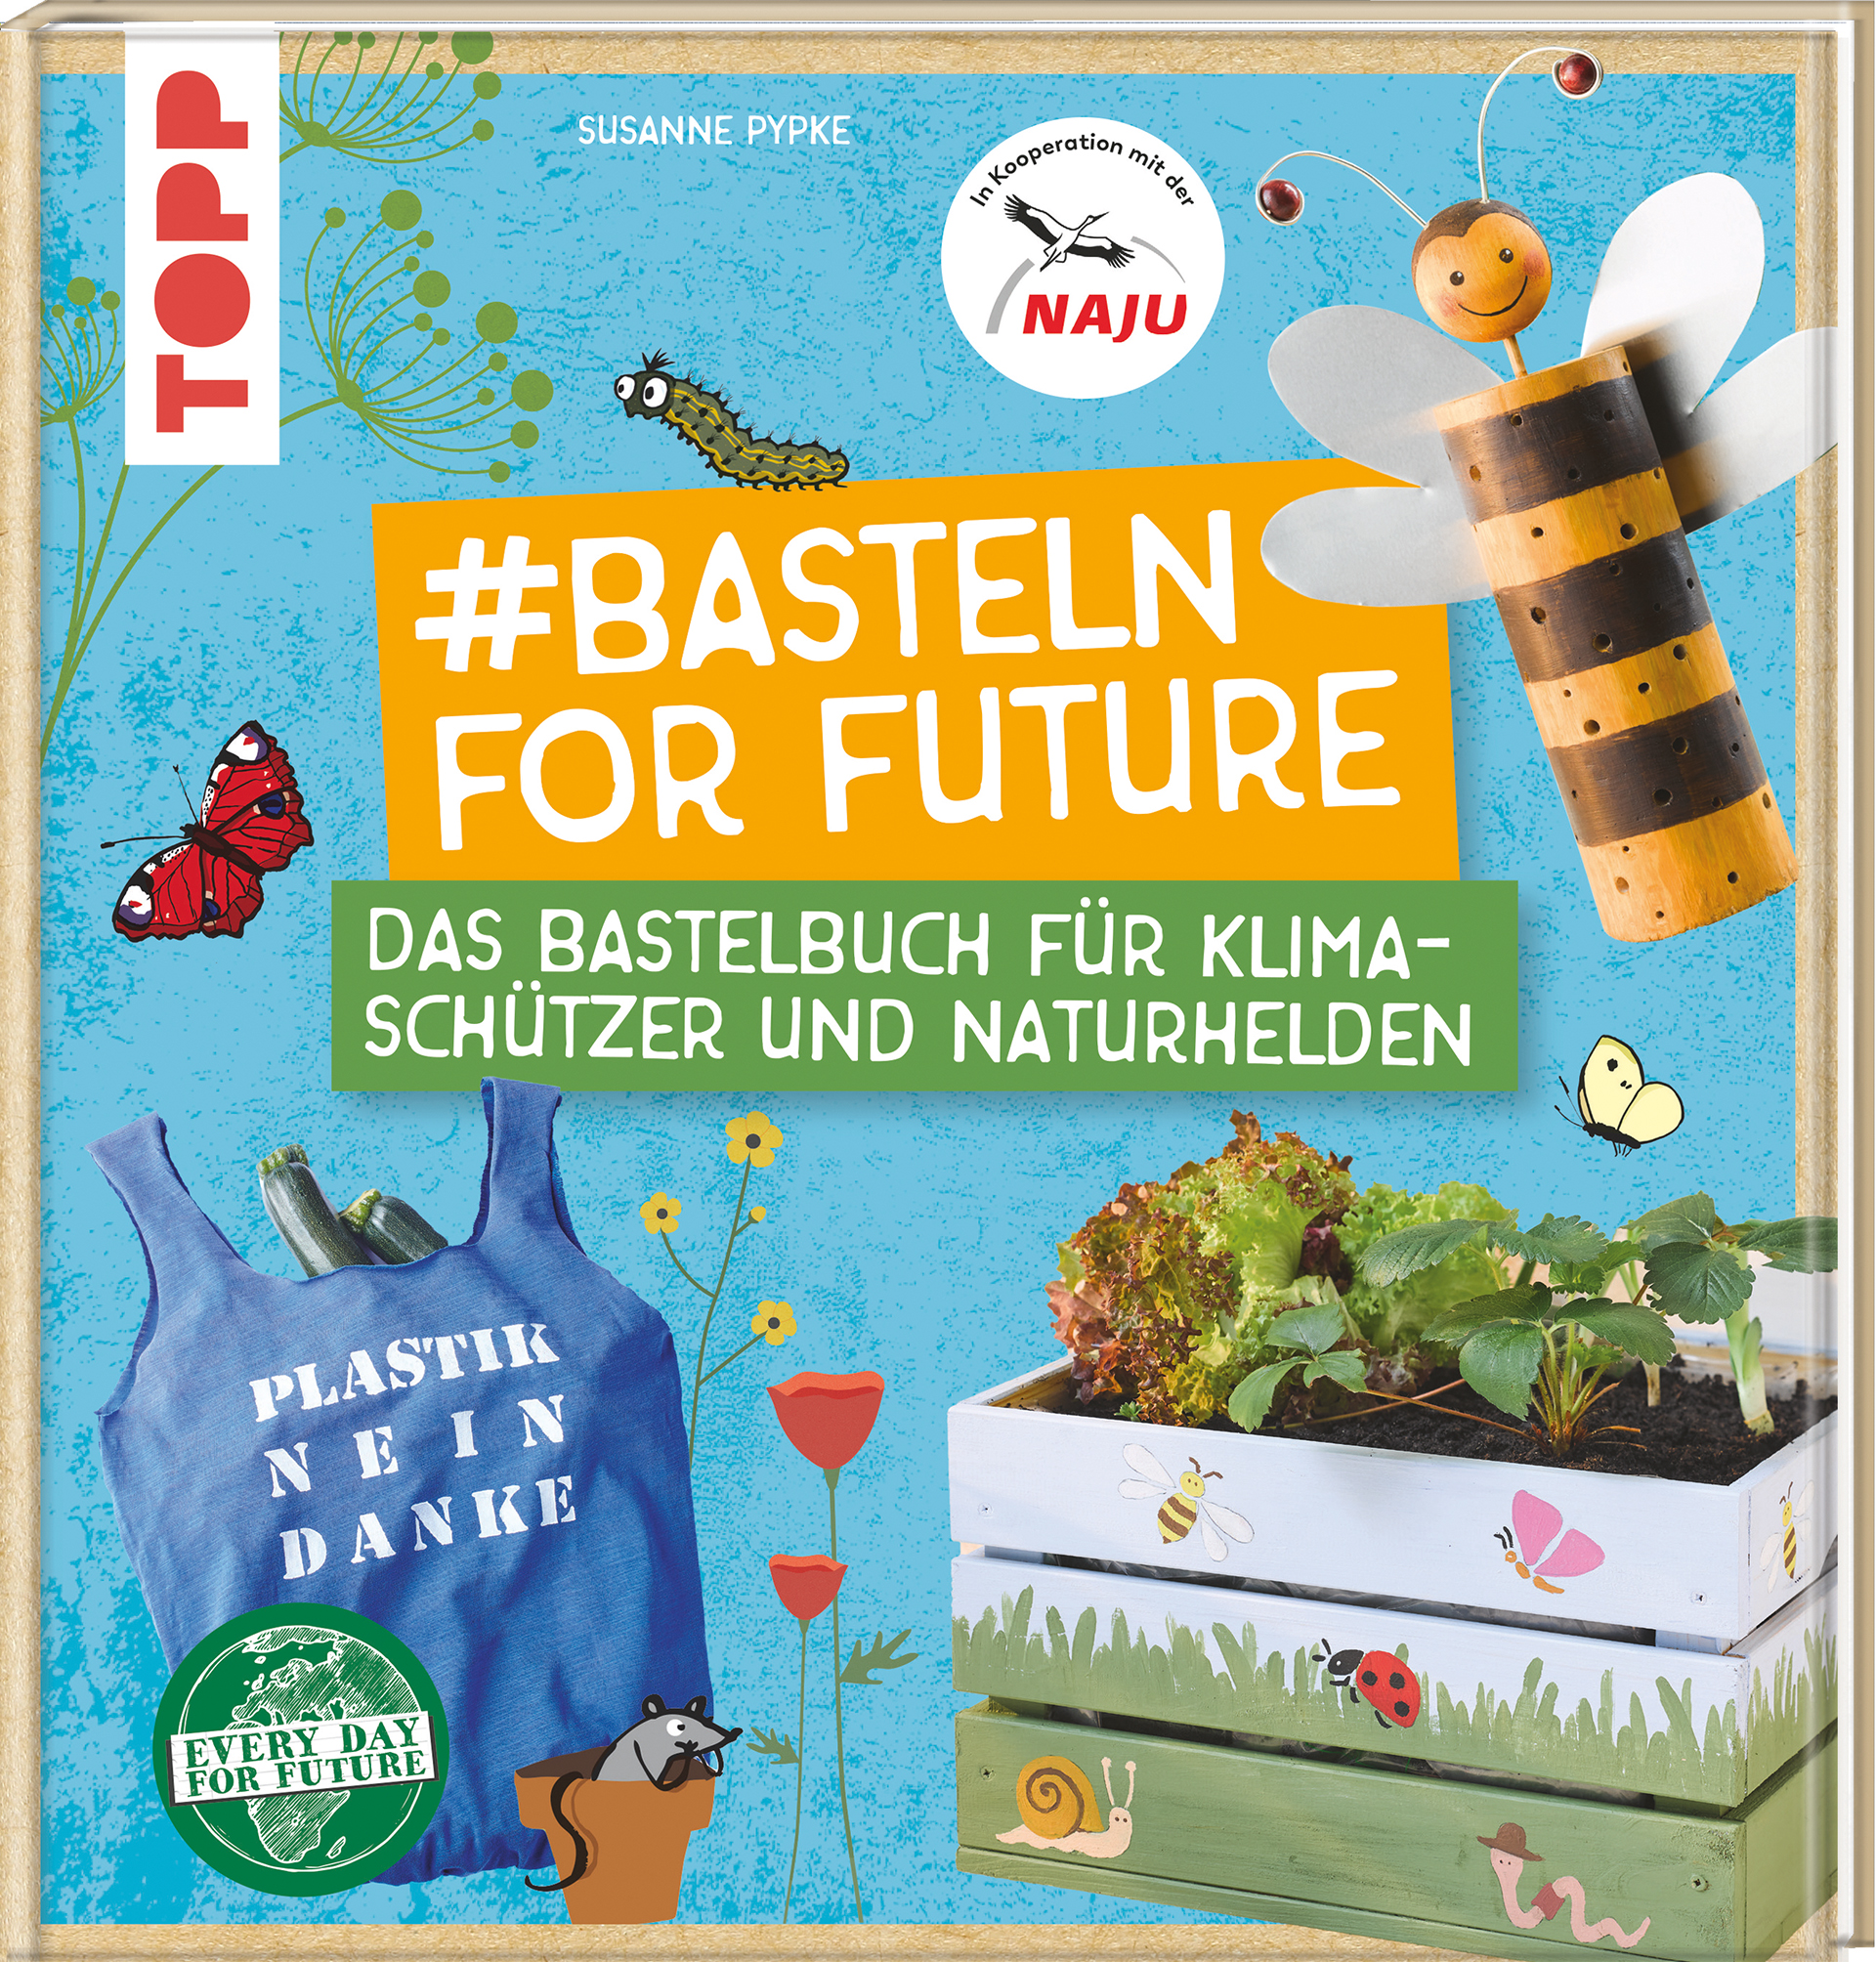 #Basteln for Future: Das Bastelbuch für Klimaschützer und Naturhelden